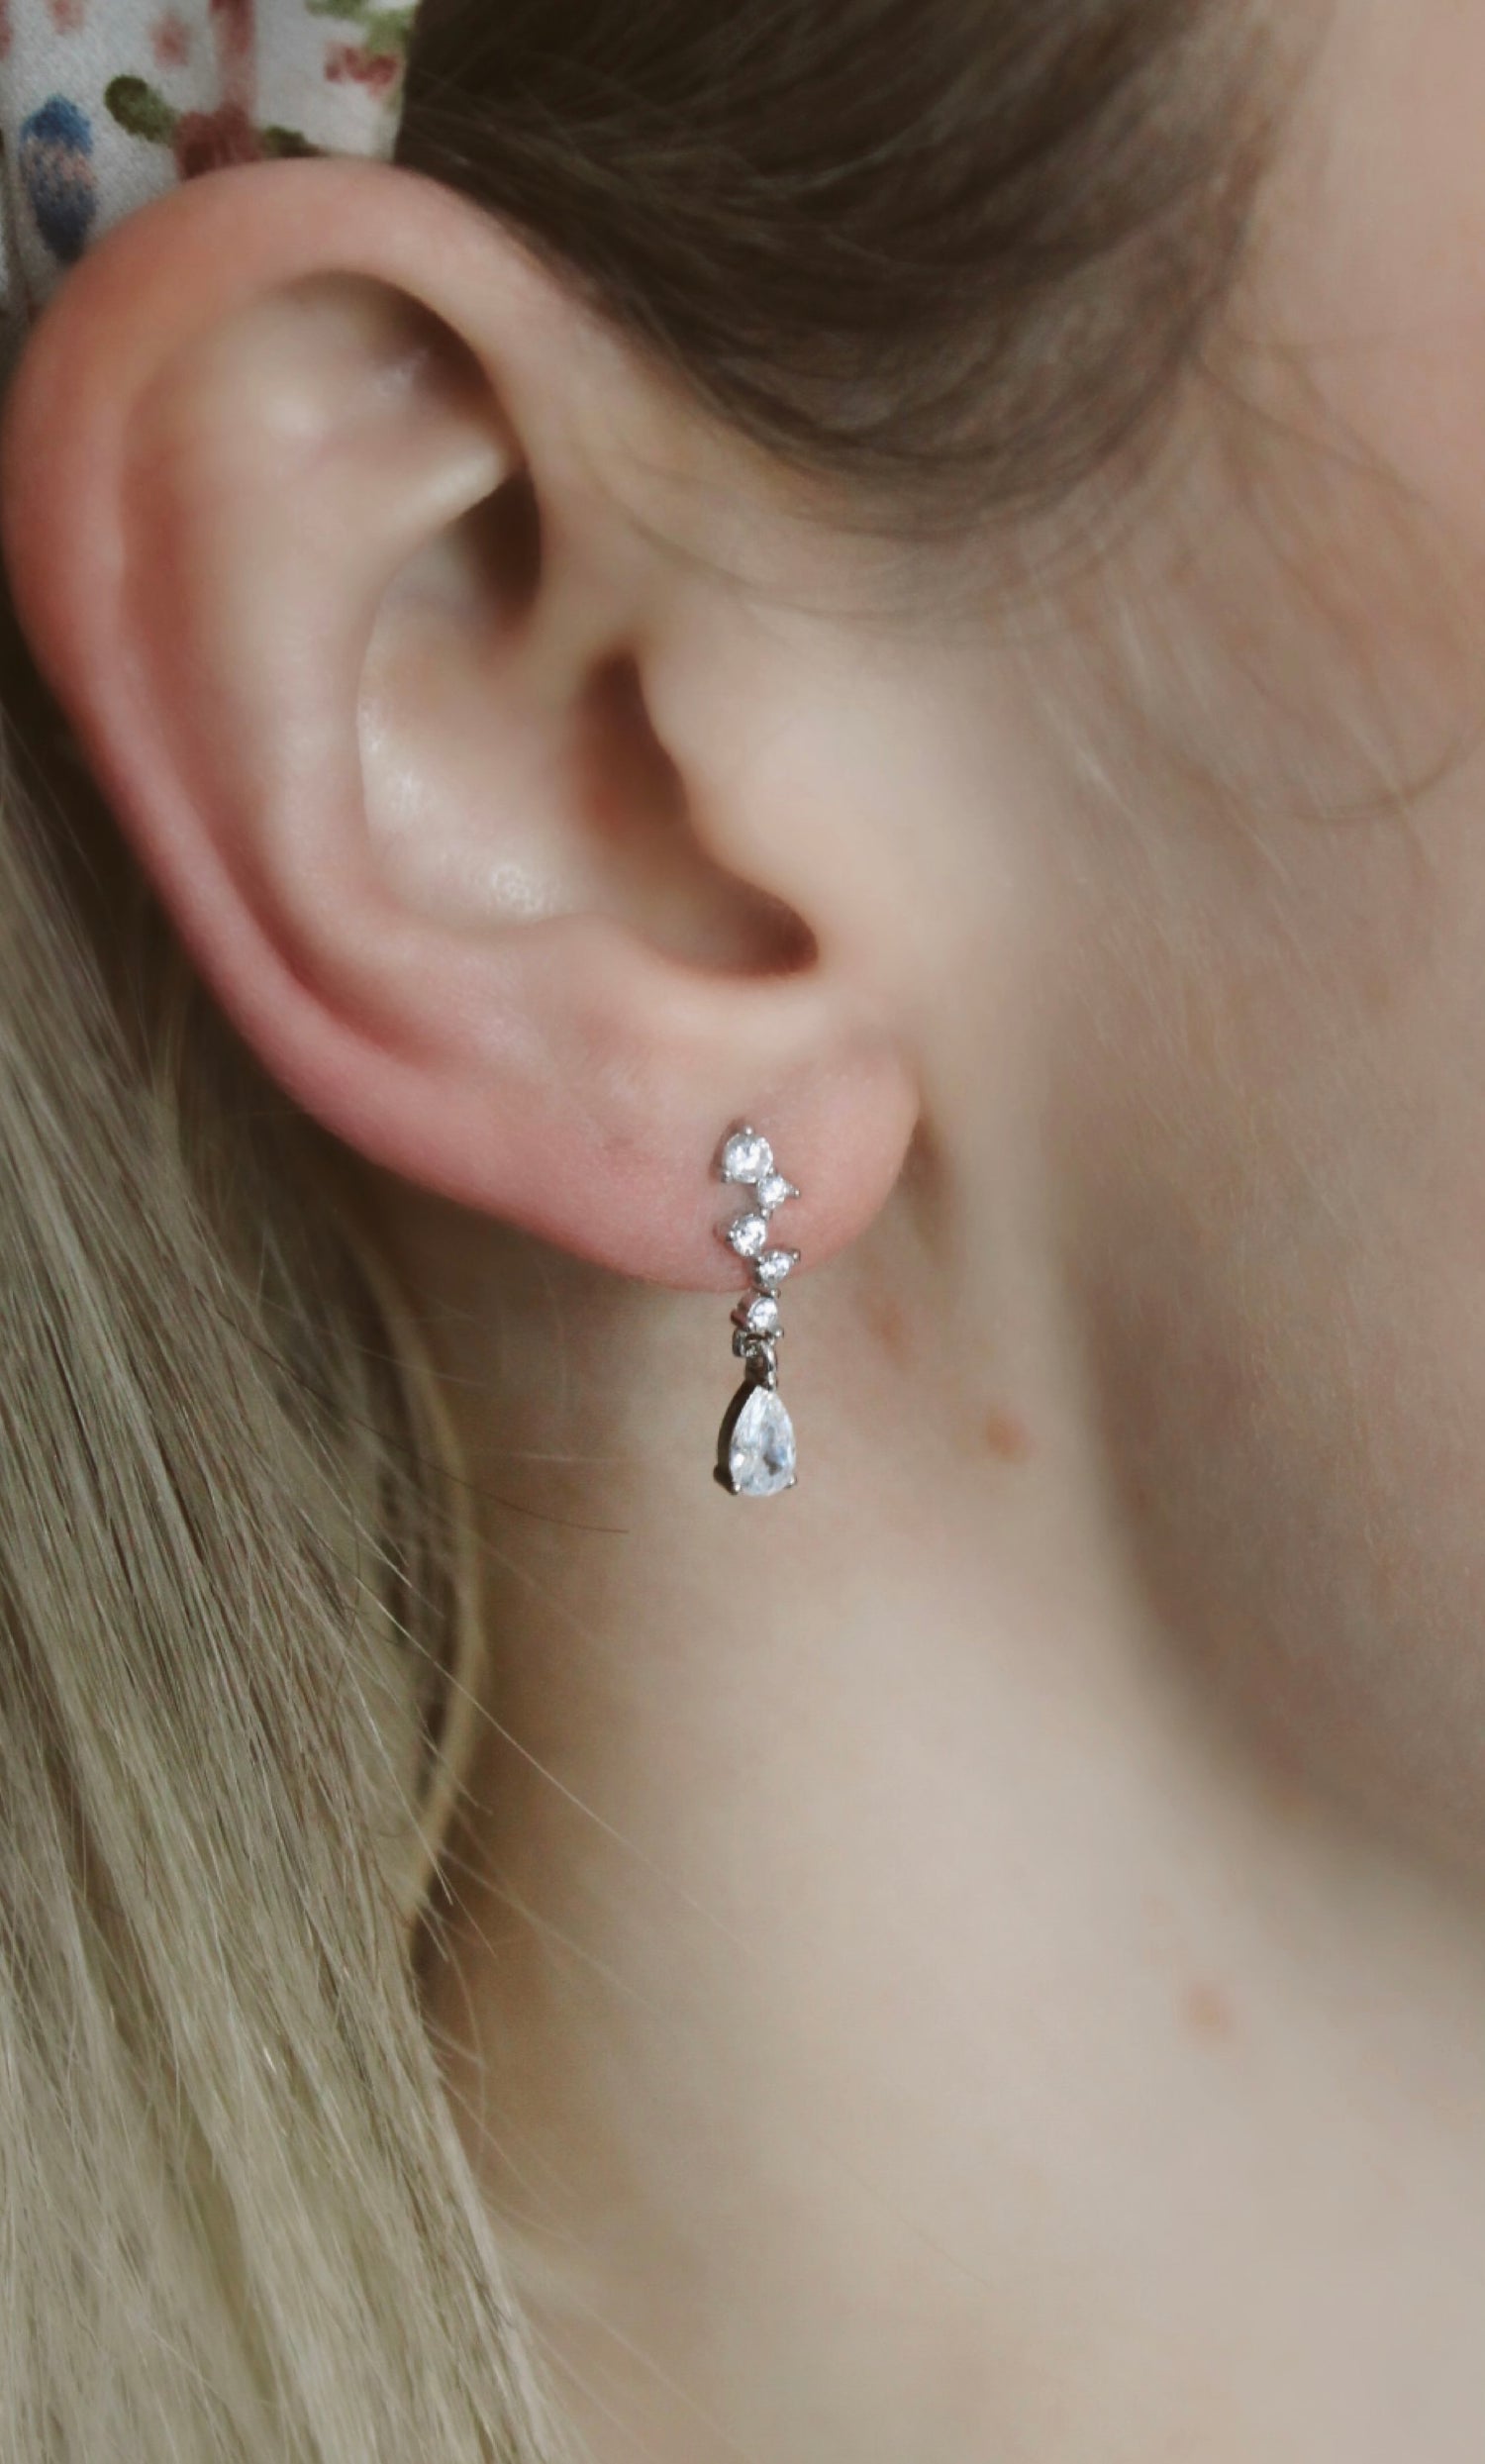 Wedding Earrings in ear